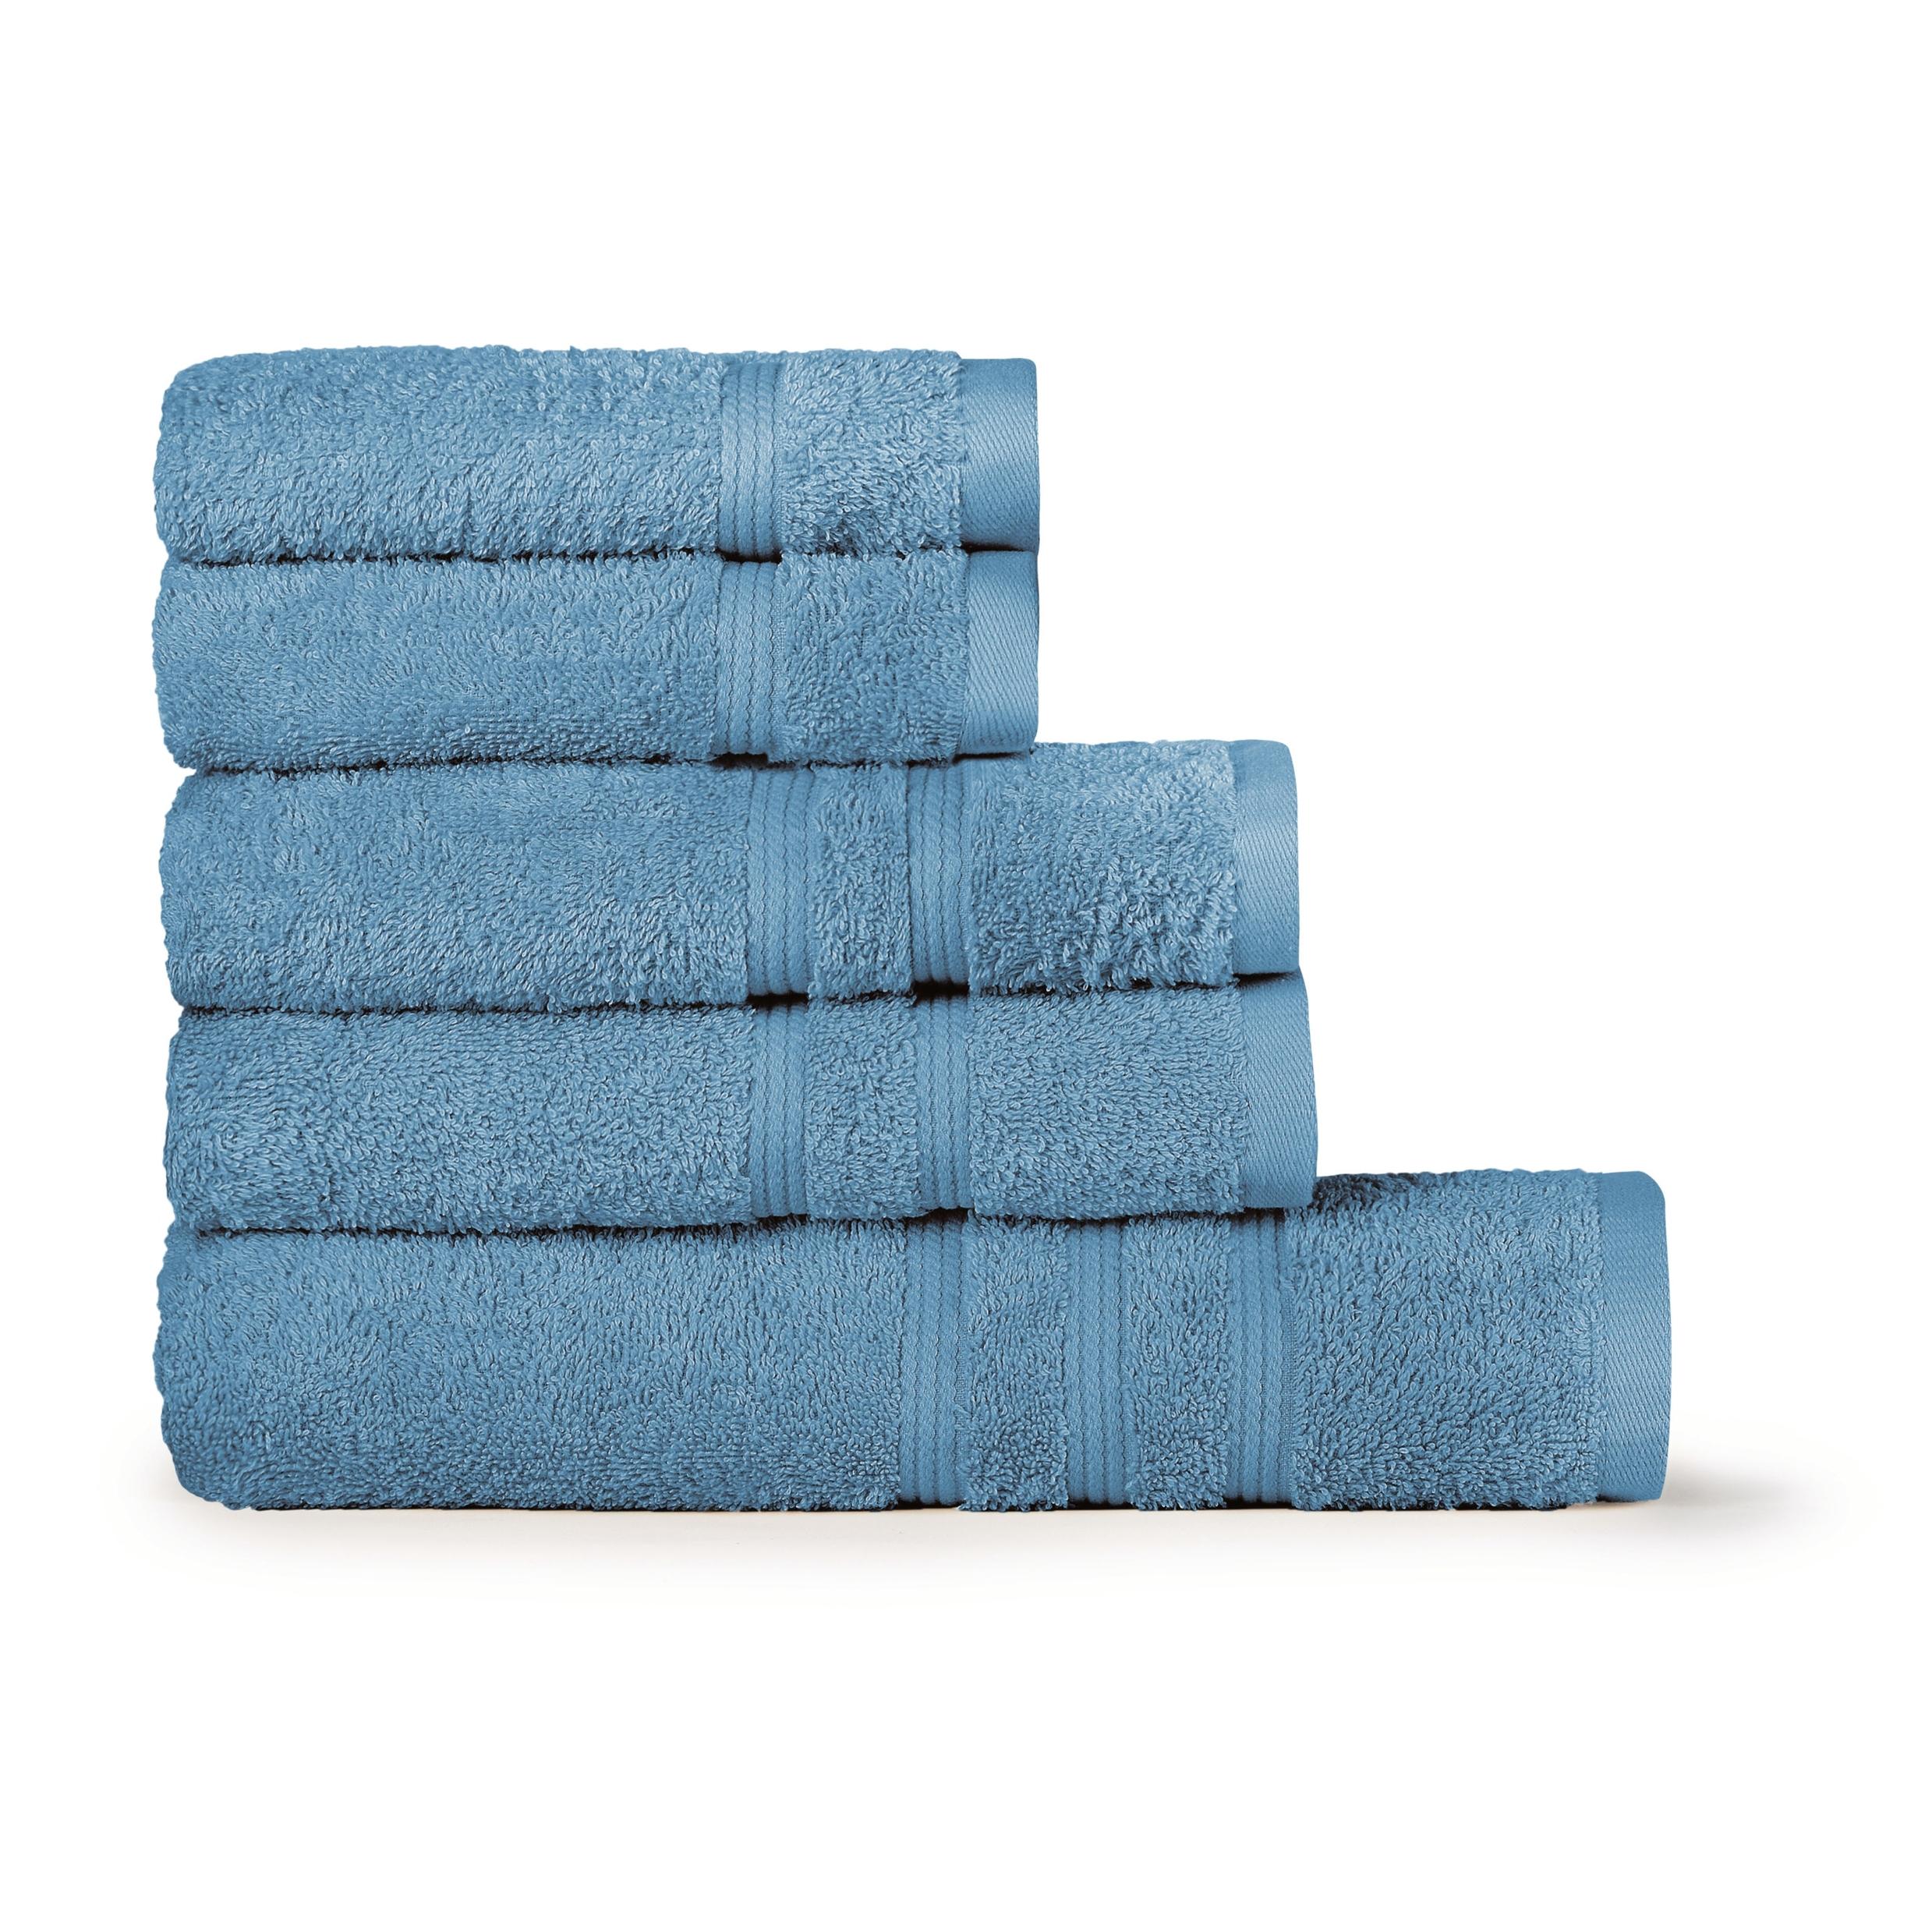 Bassetti - BASSETTI Morbido Asciugamano Asciugamani 480 gr 100% Cotone Set  da 5 pz Collezione MONIQUE - CIELO BA